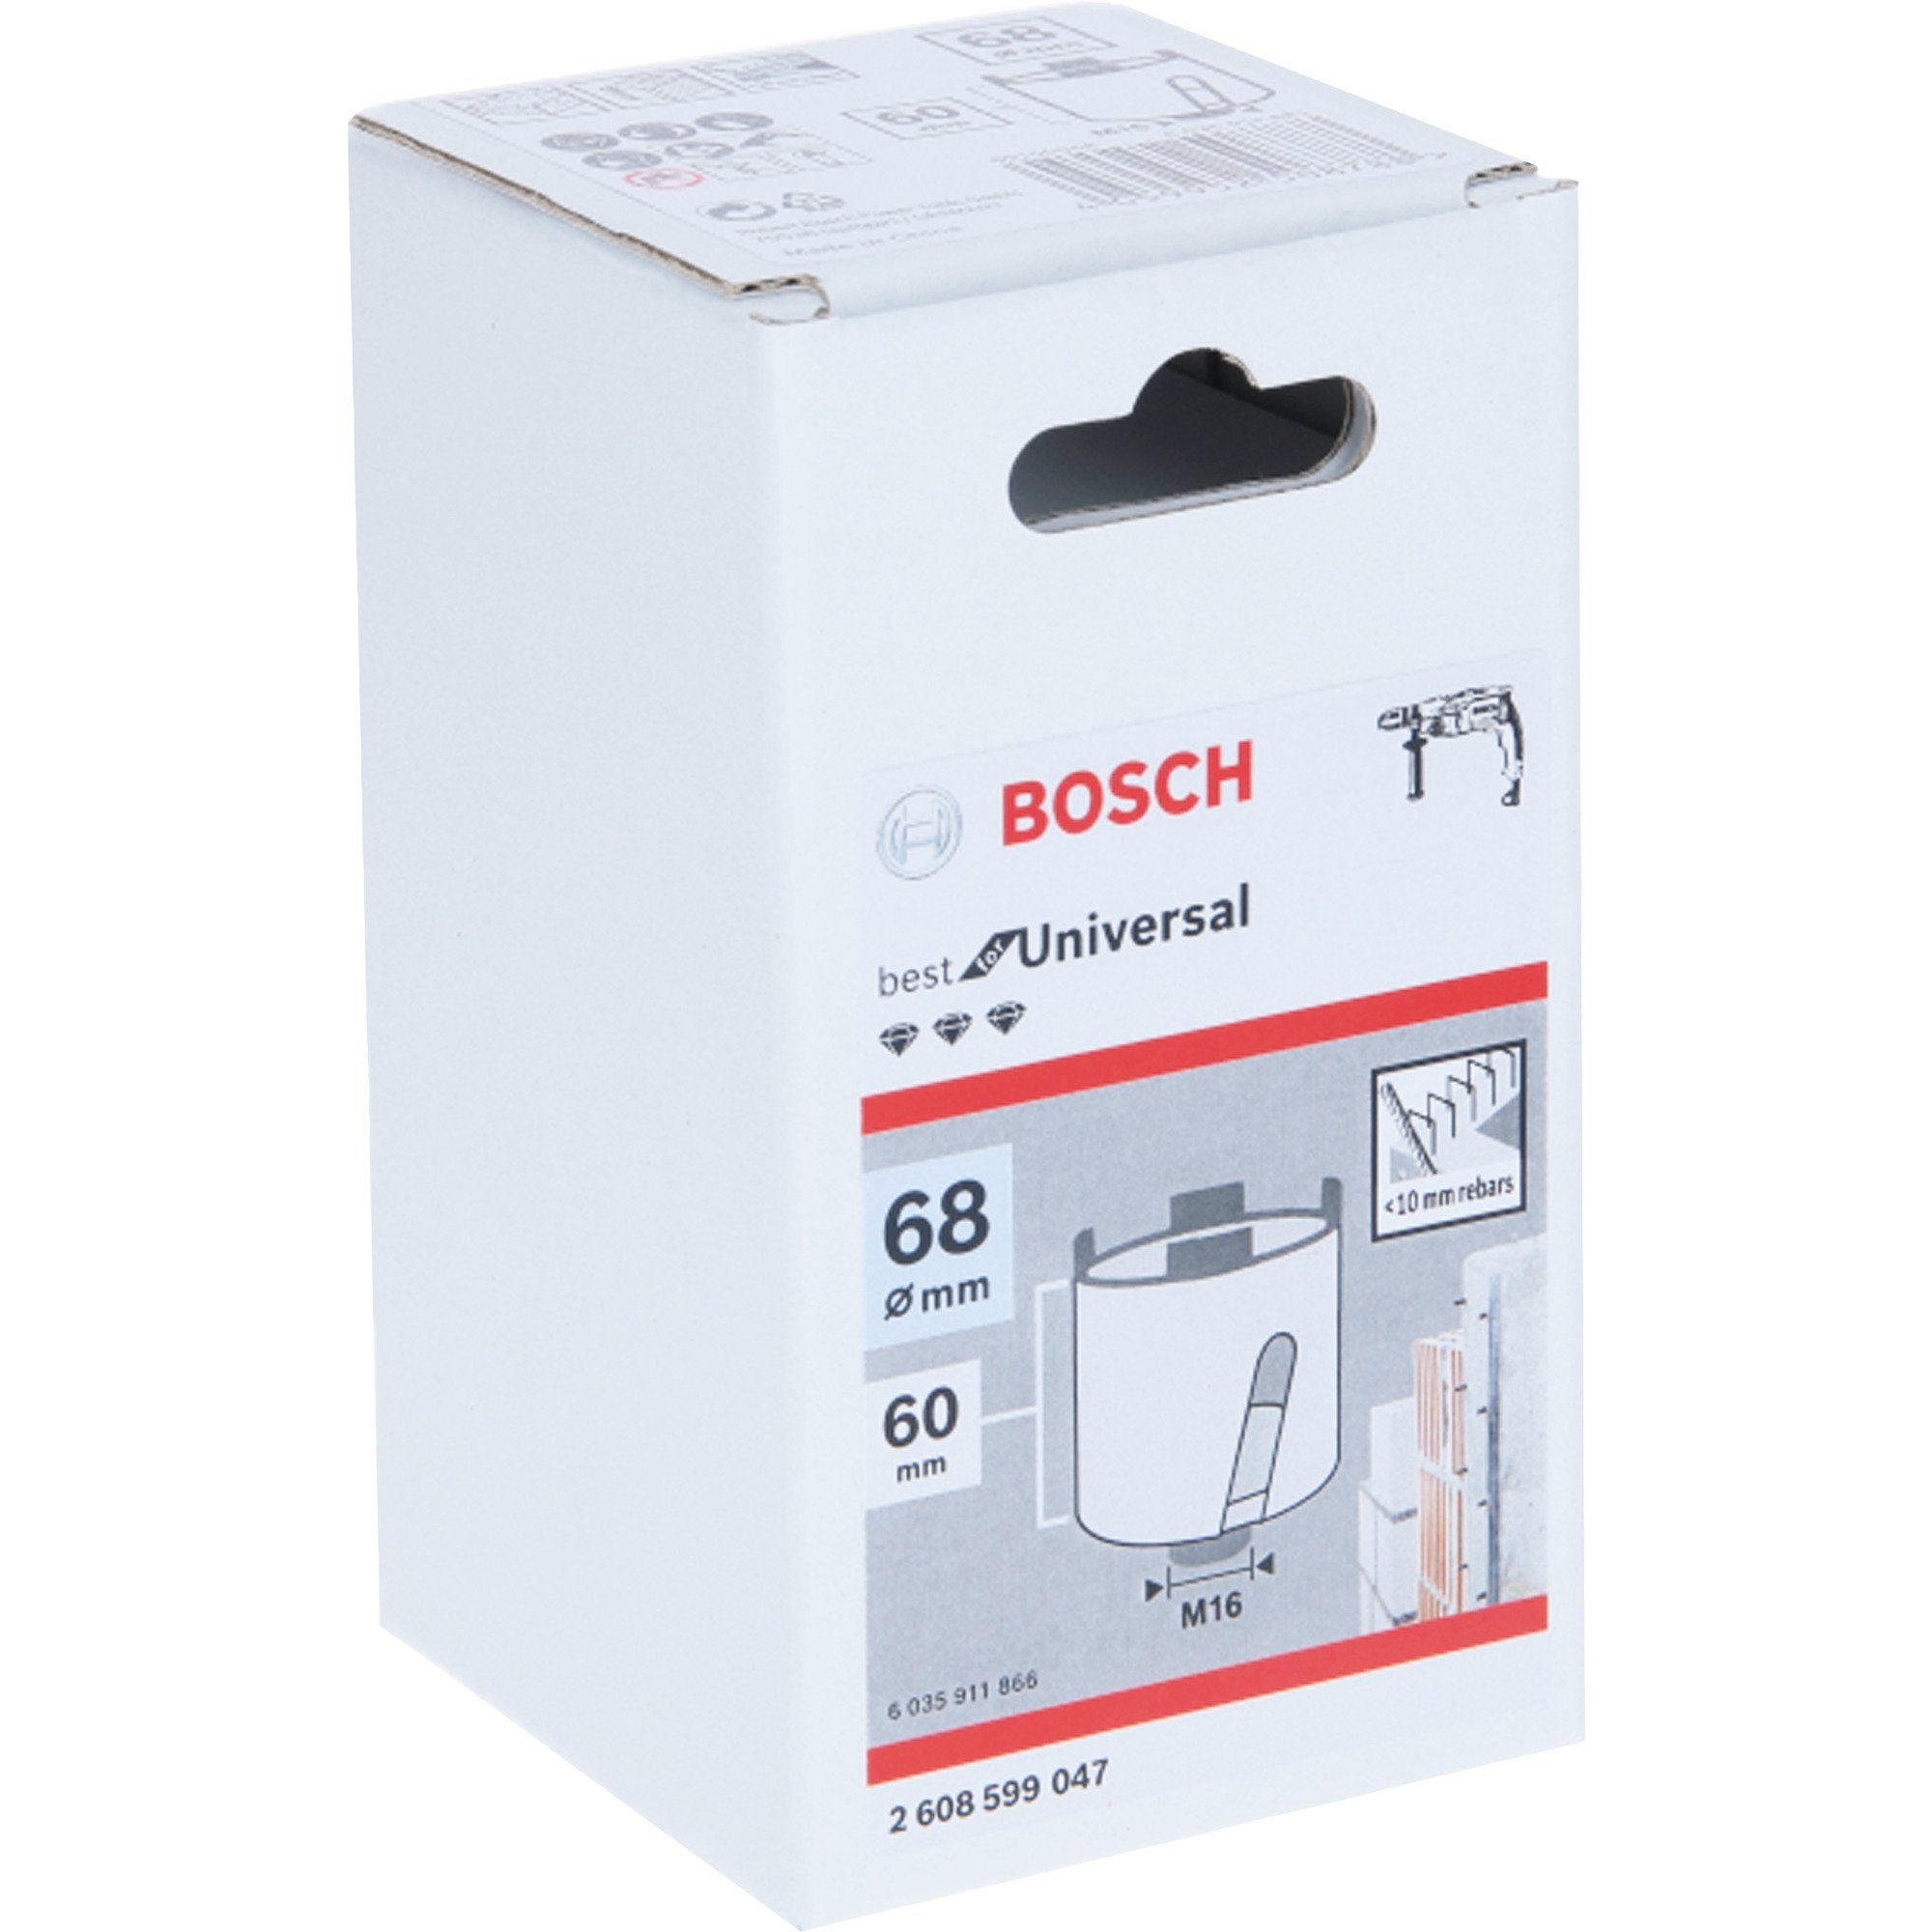 Professional Bohrer- Bosch und Diamant-Steckdosen-Bohrkrone BOSCH Bitset